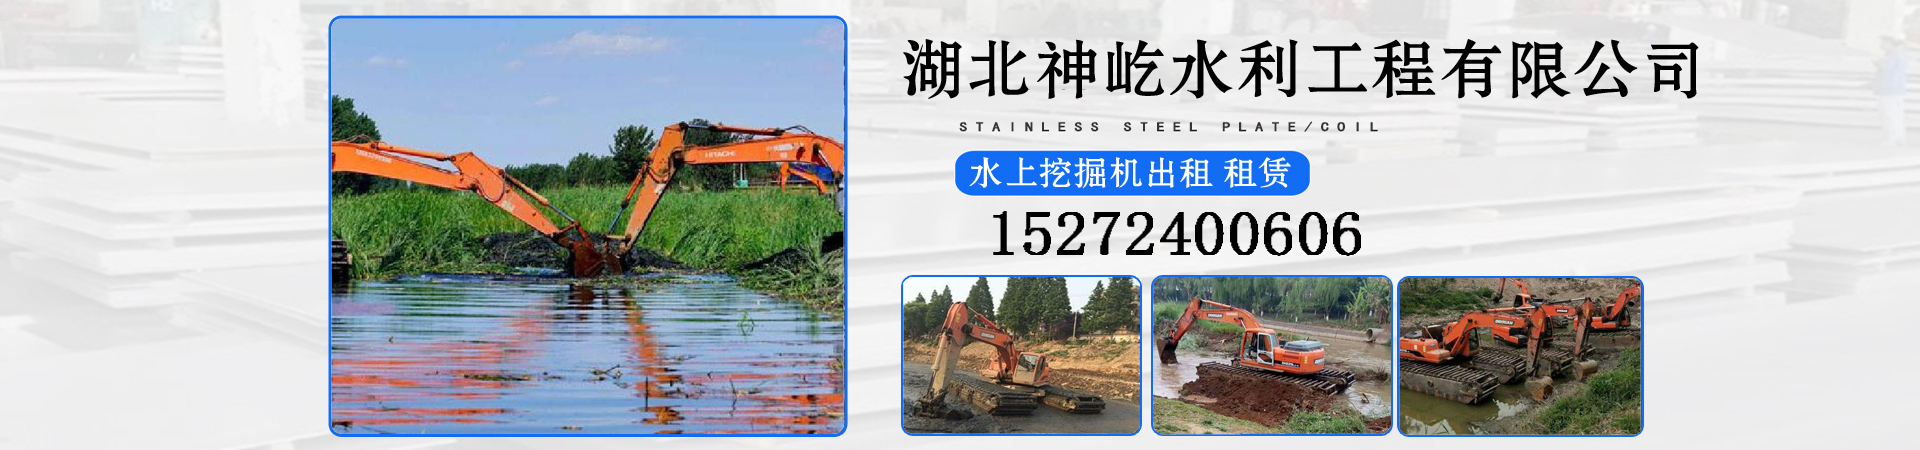 租赁水陆挖掘机、扬州本地租赁水陆挖掘机、扬州、扬州租赁水陆挖掘机